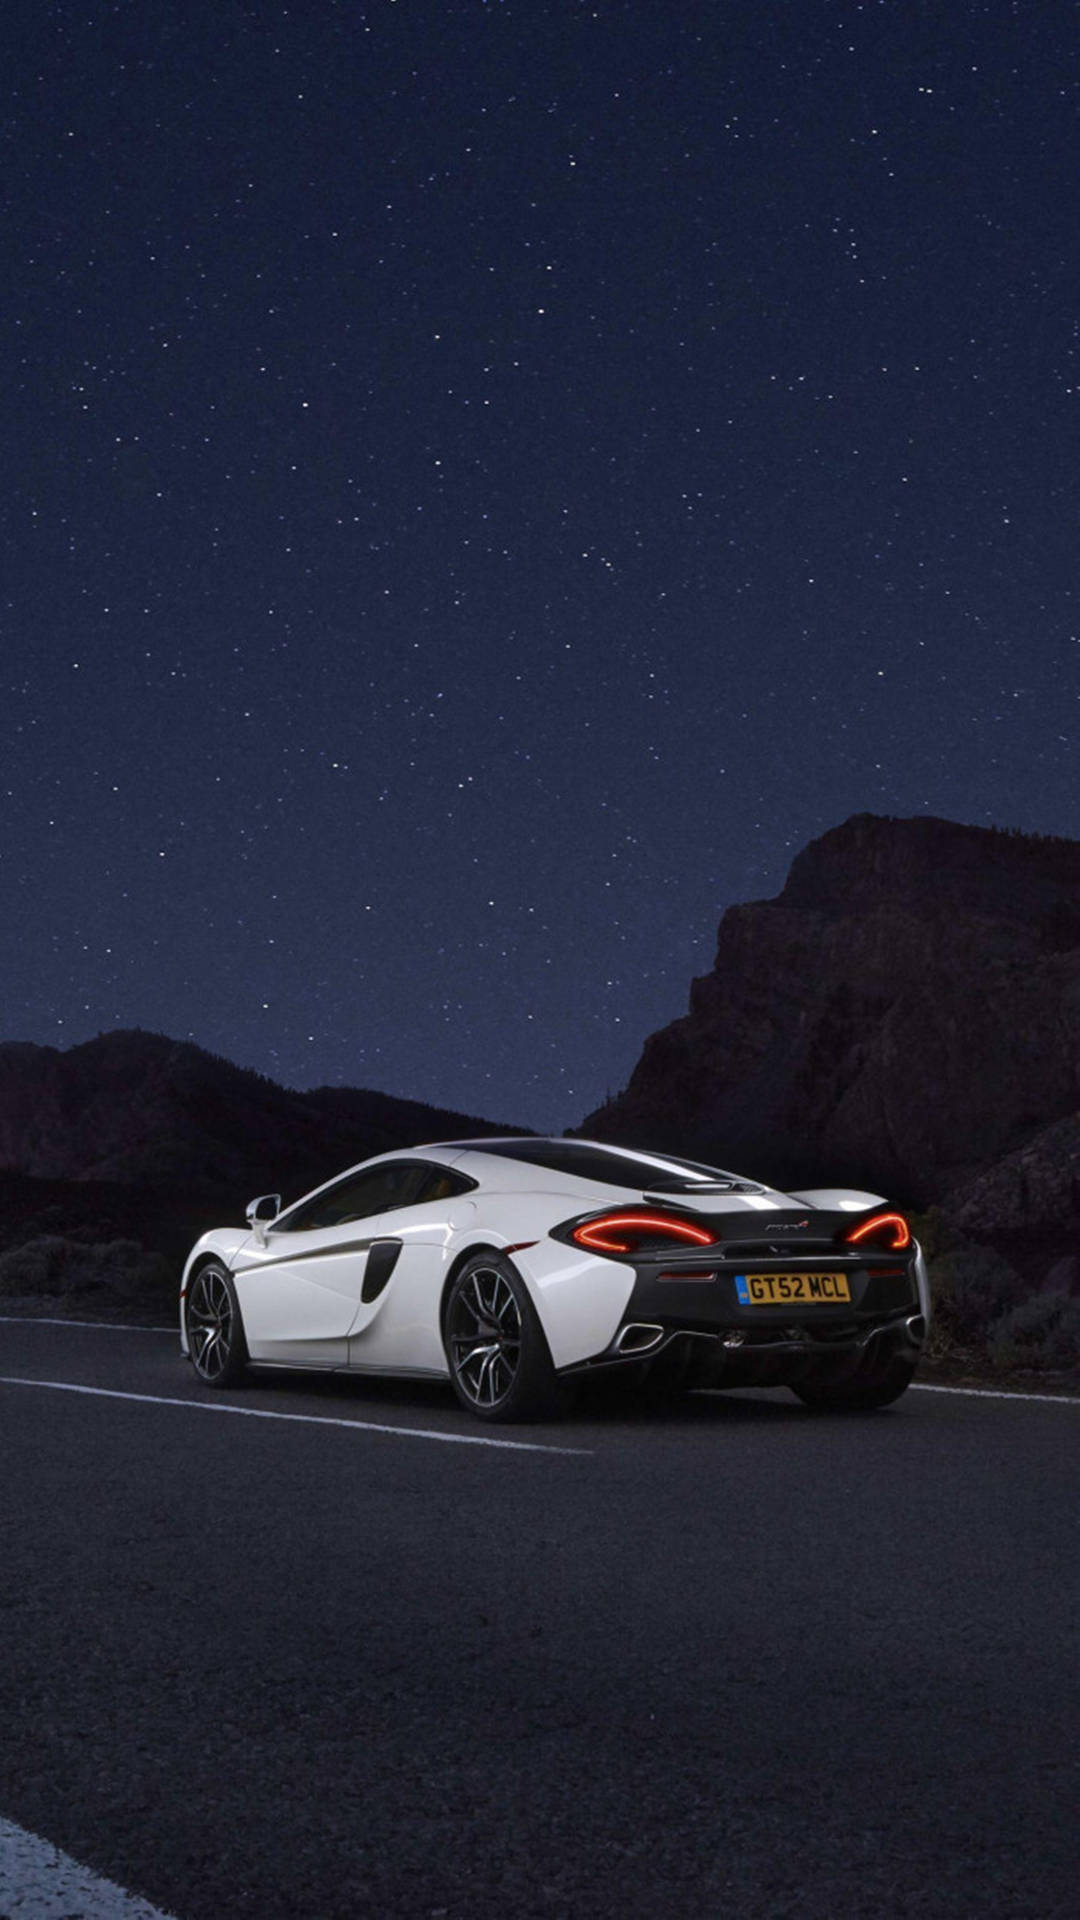 Caption: "Stunning White McLaren Against Dark Aesthetic Backdrop" Wallpaper